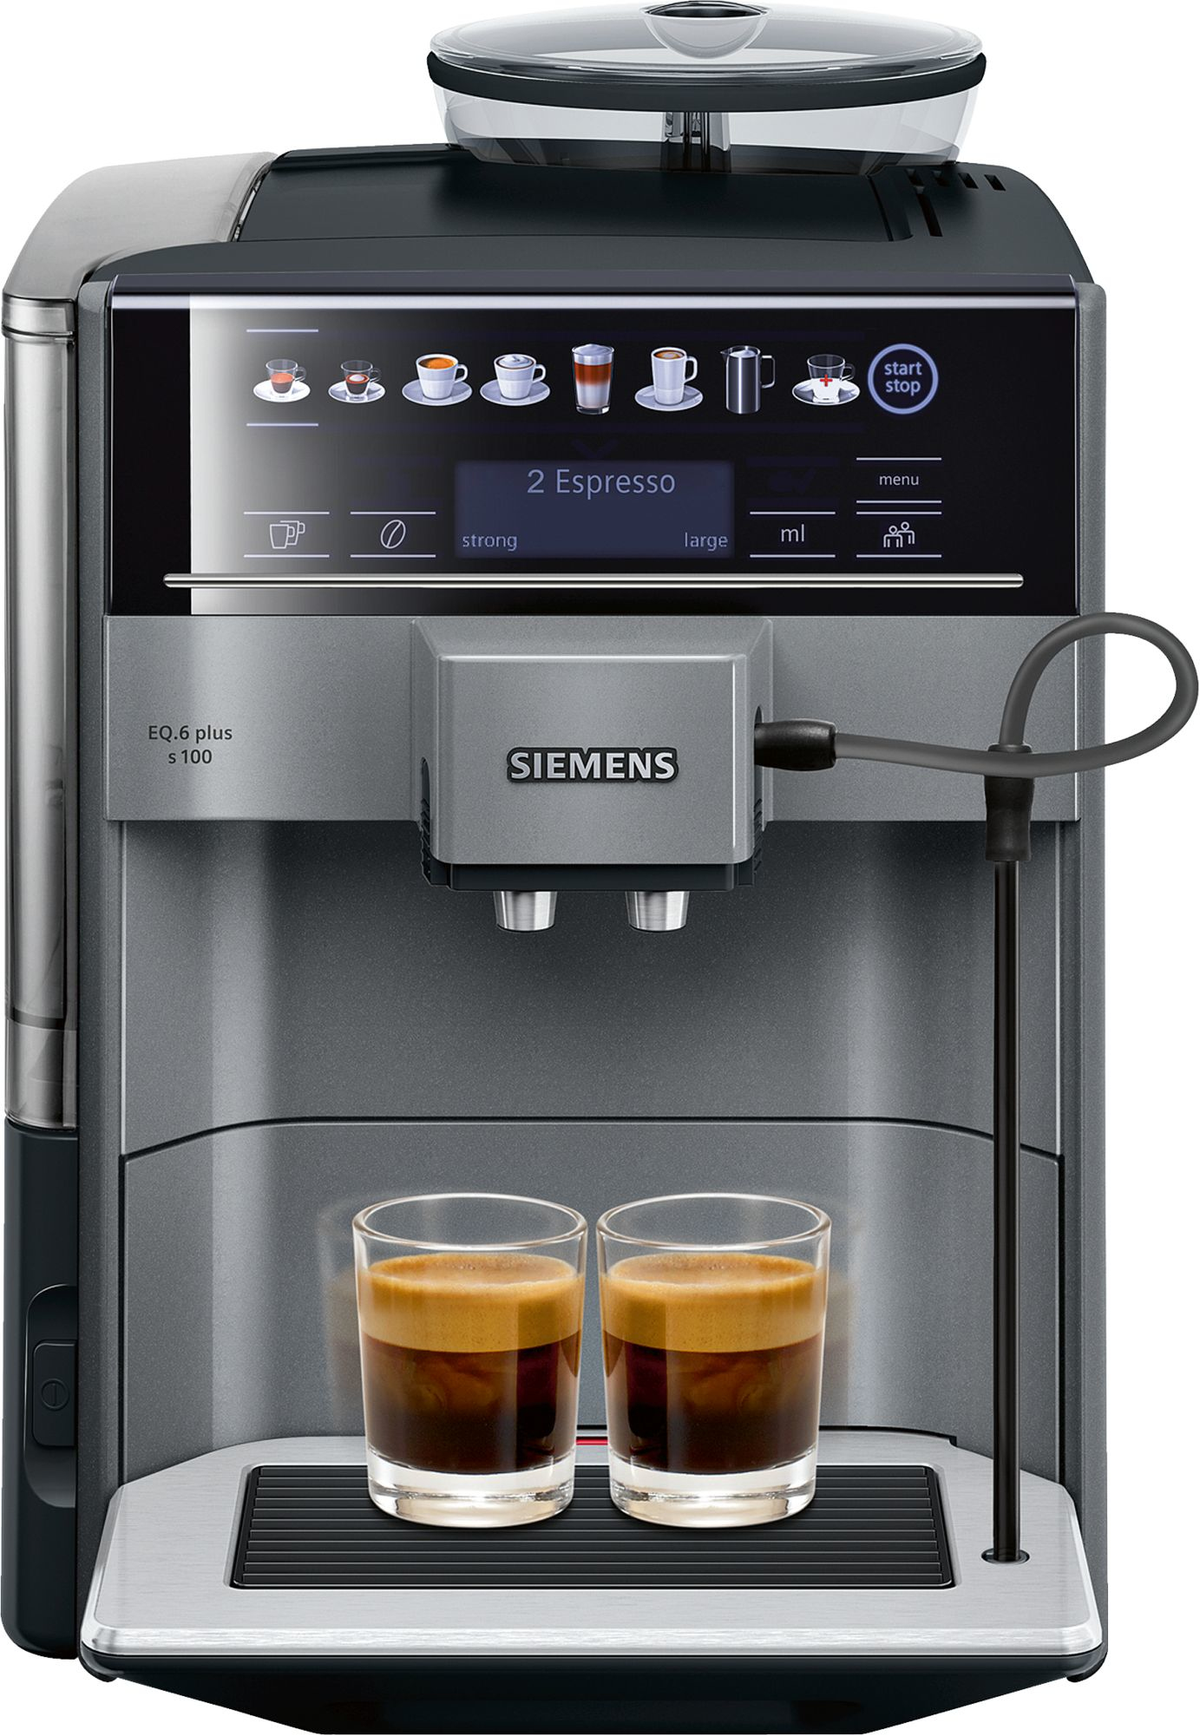 SIEMENS Espresso titan/schwarz plus Espressomaschine s100 EQ.6